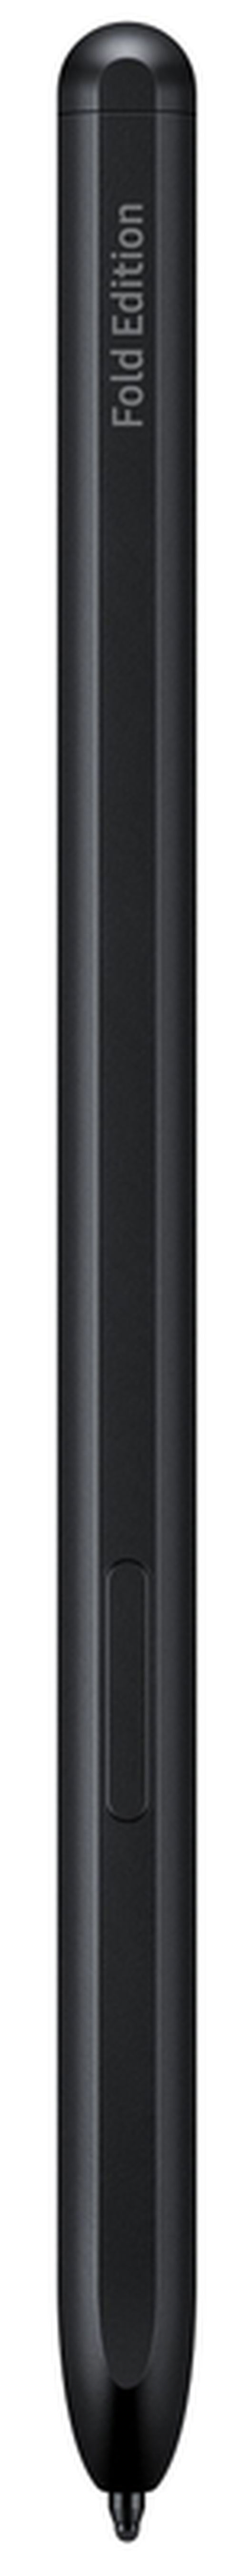 купить Аксессуар для моб. устройства Samsung EJ-PF926 S Pen Q2 Black в Кишинёве 